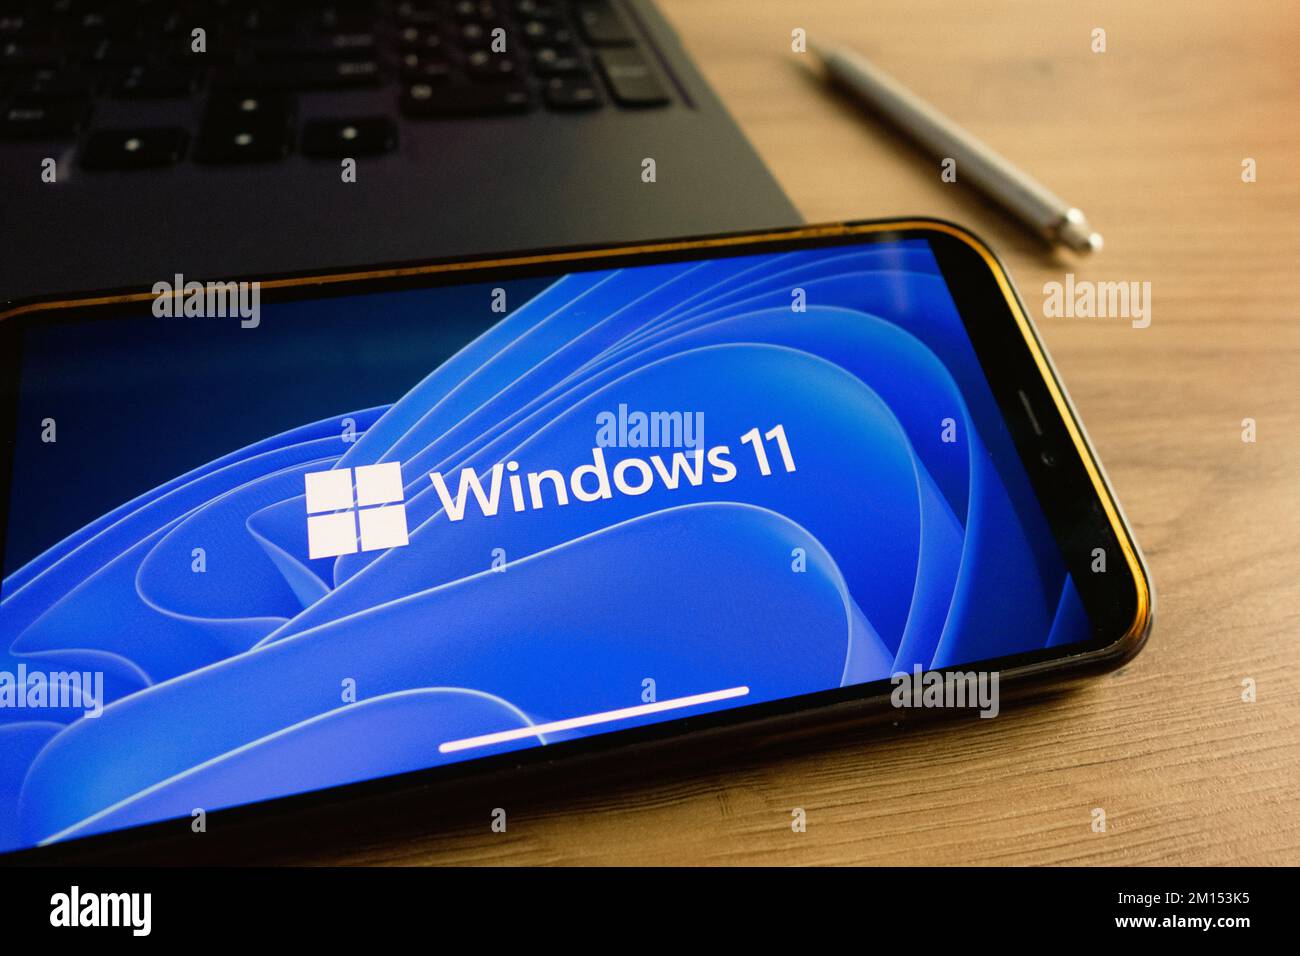 KONSKIE, POLOGNE - 17 septembre 2022 : logo Windows 11 affiché sur l'écran du smartphone au bureau. Windows 11 est la dernière version majeure de Microsof Banque D'Images